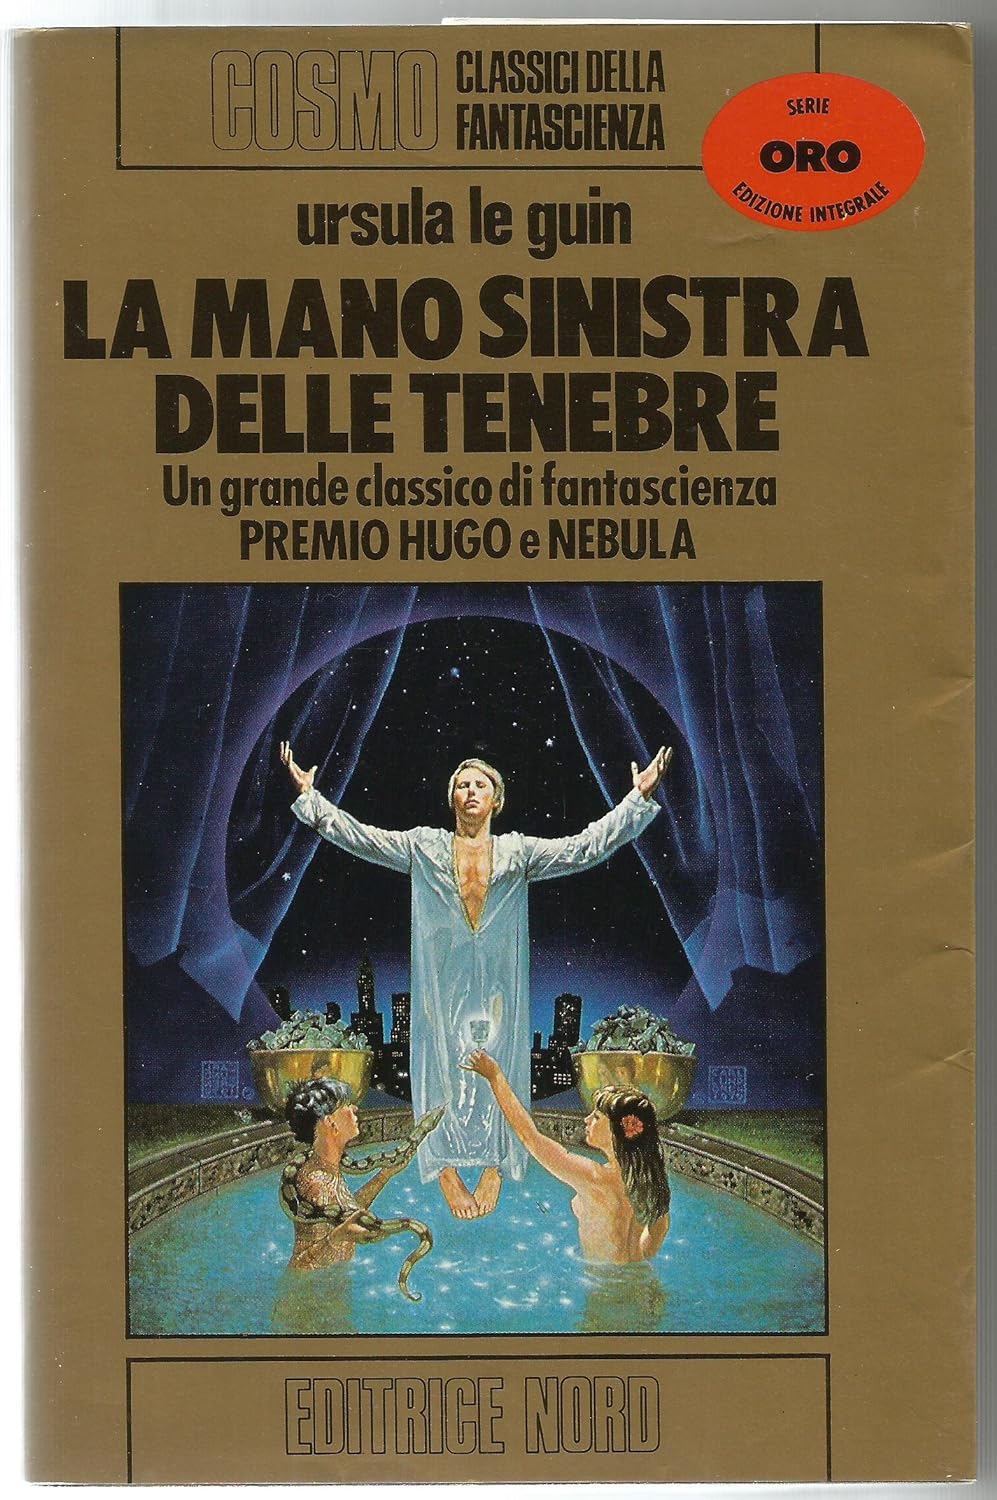 Ursula K. Le Guin: La Mano Sinistra delle Tenebre (Paperback, Italiano language, 1984, Editrice Nord)